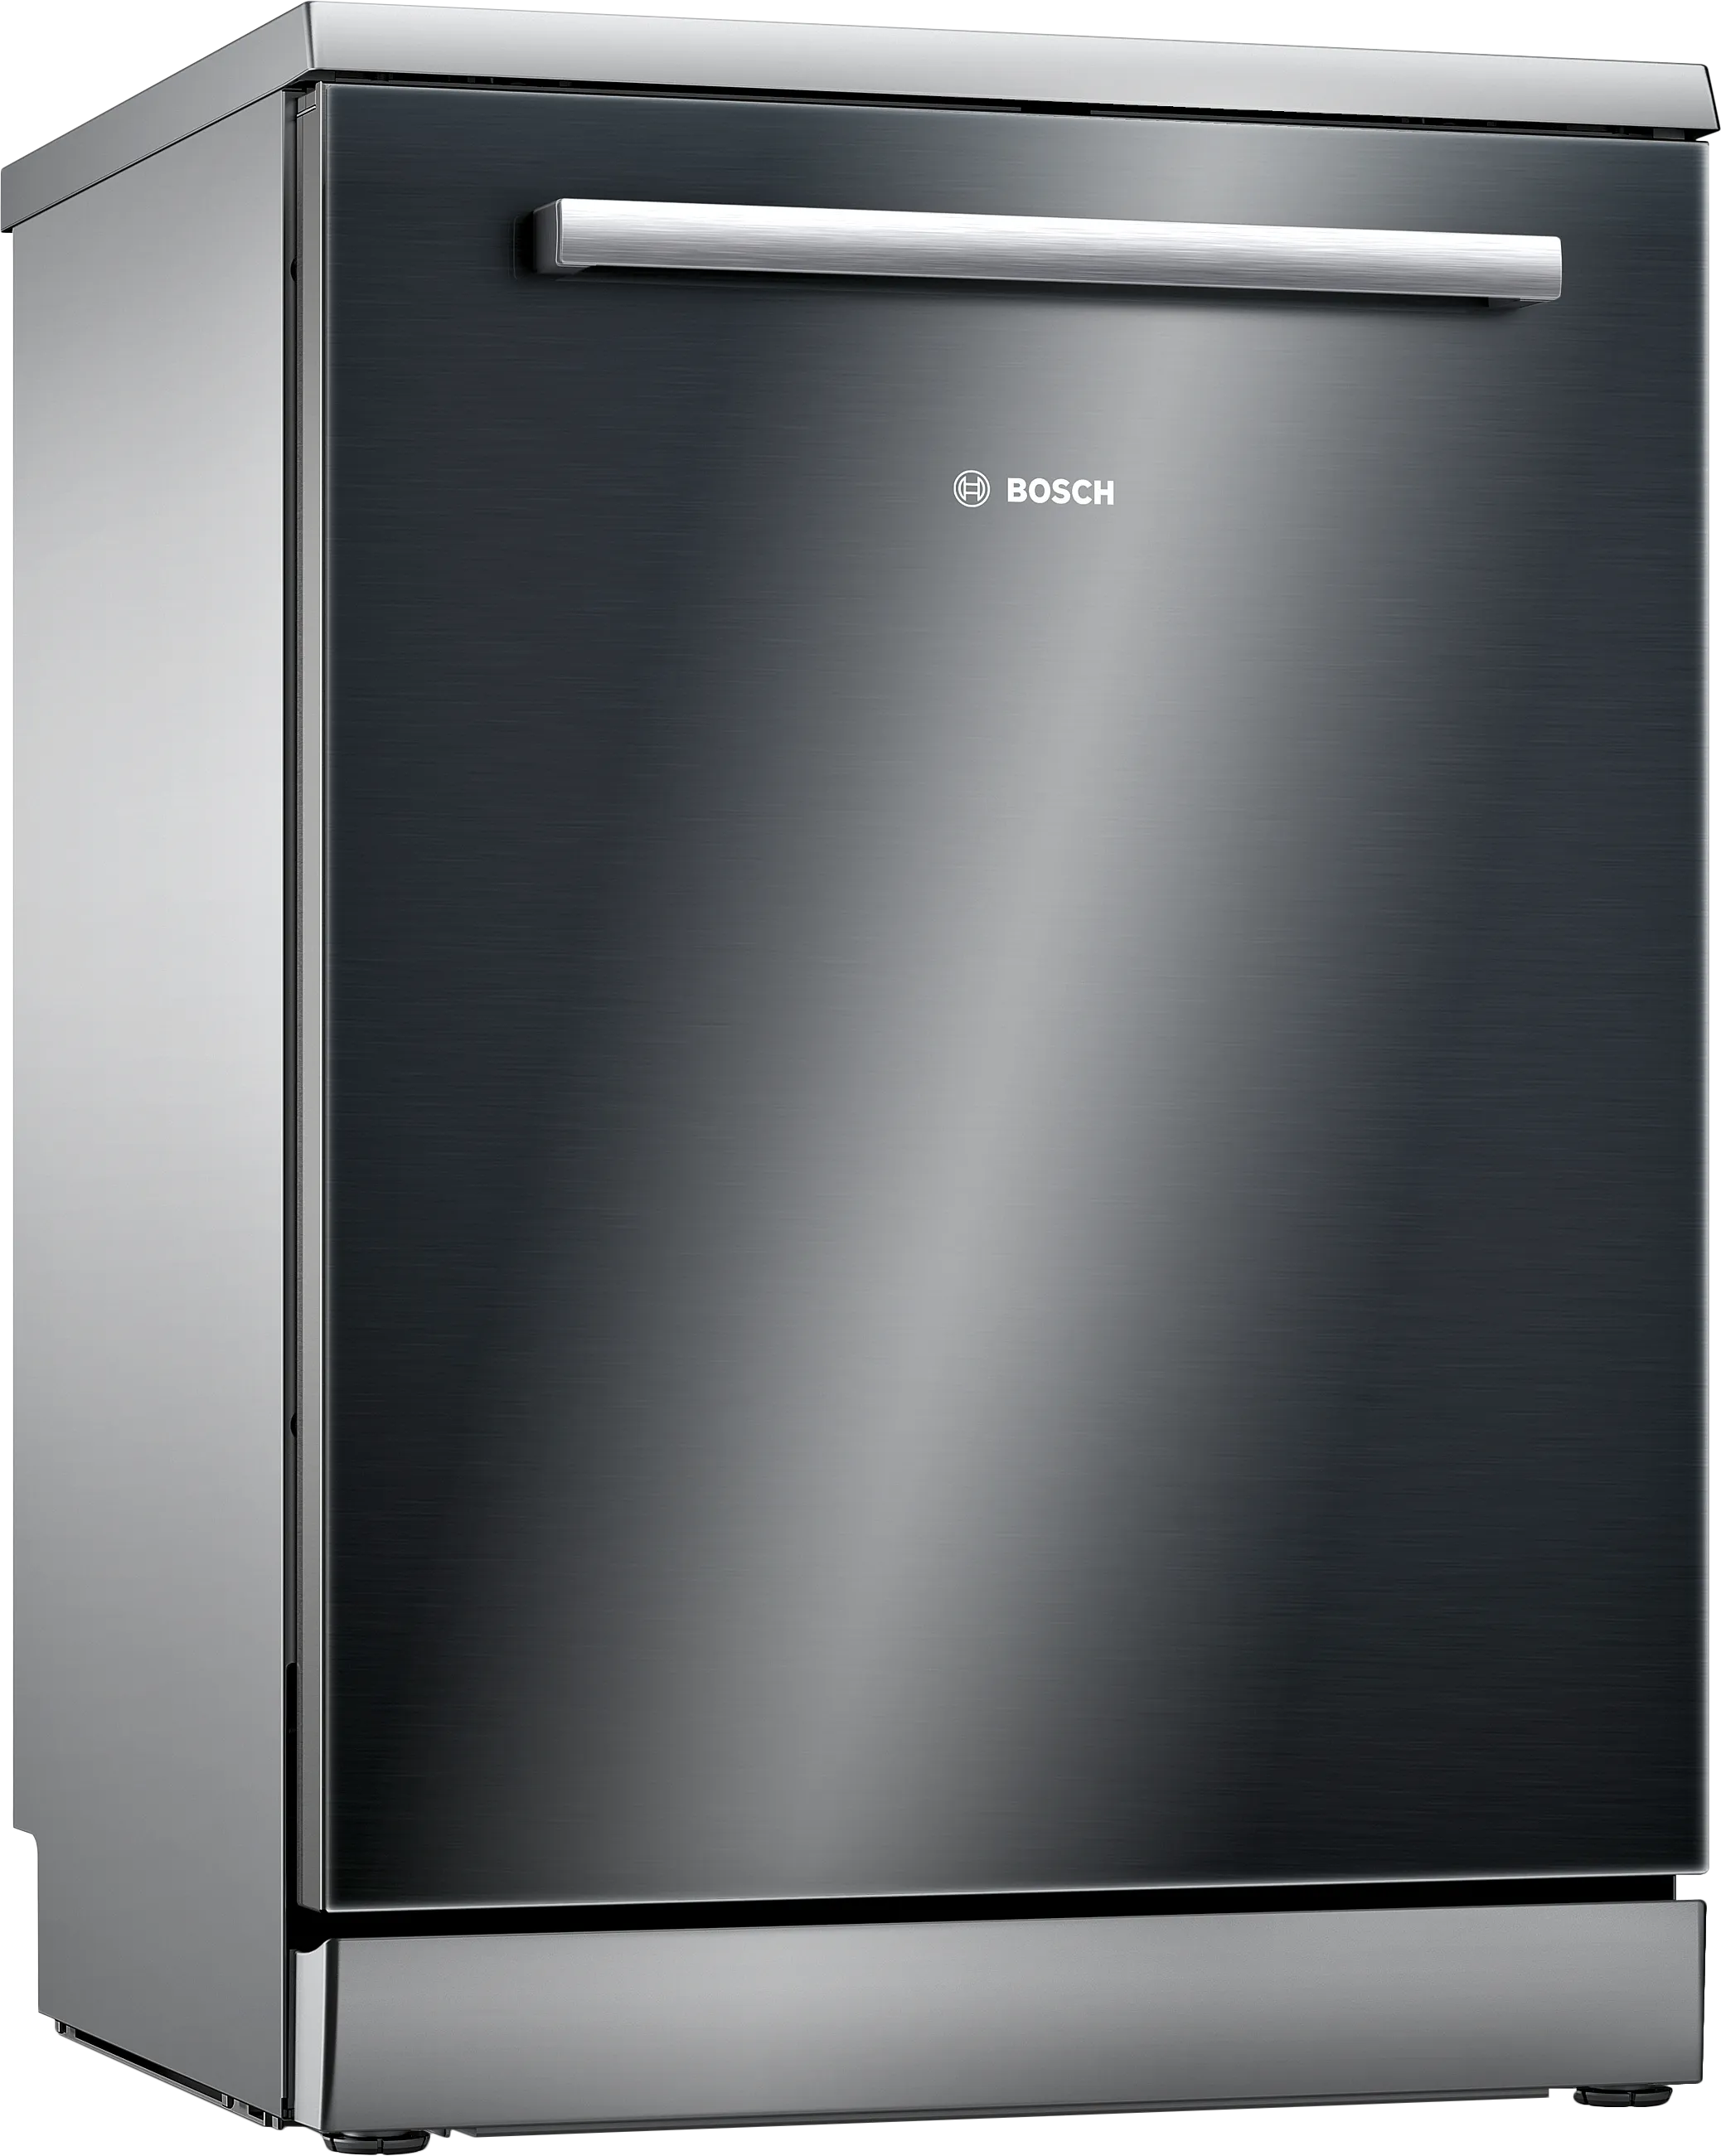 Series 6 free-standing dishwasher 60 cm Black 